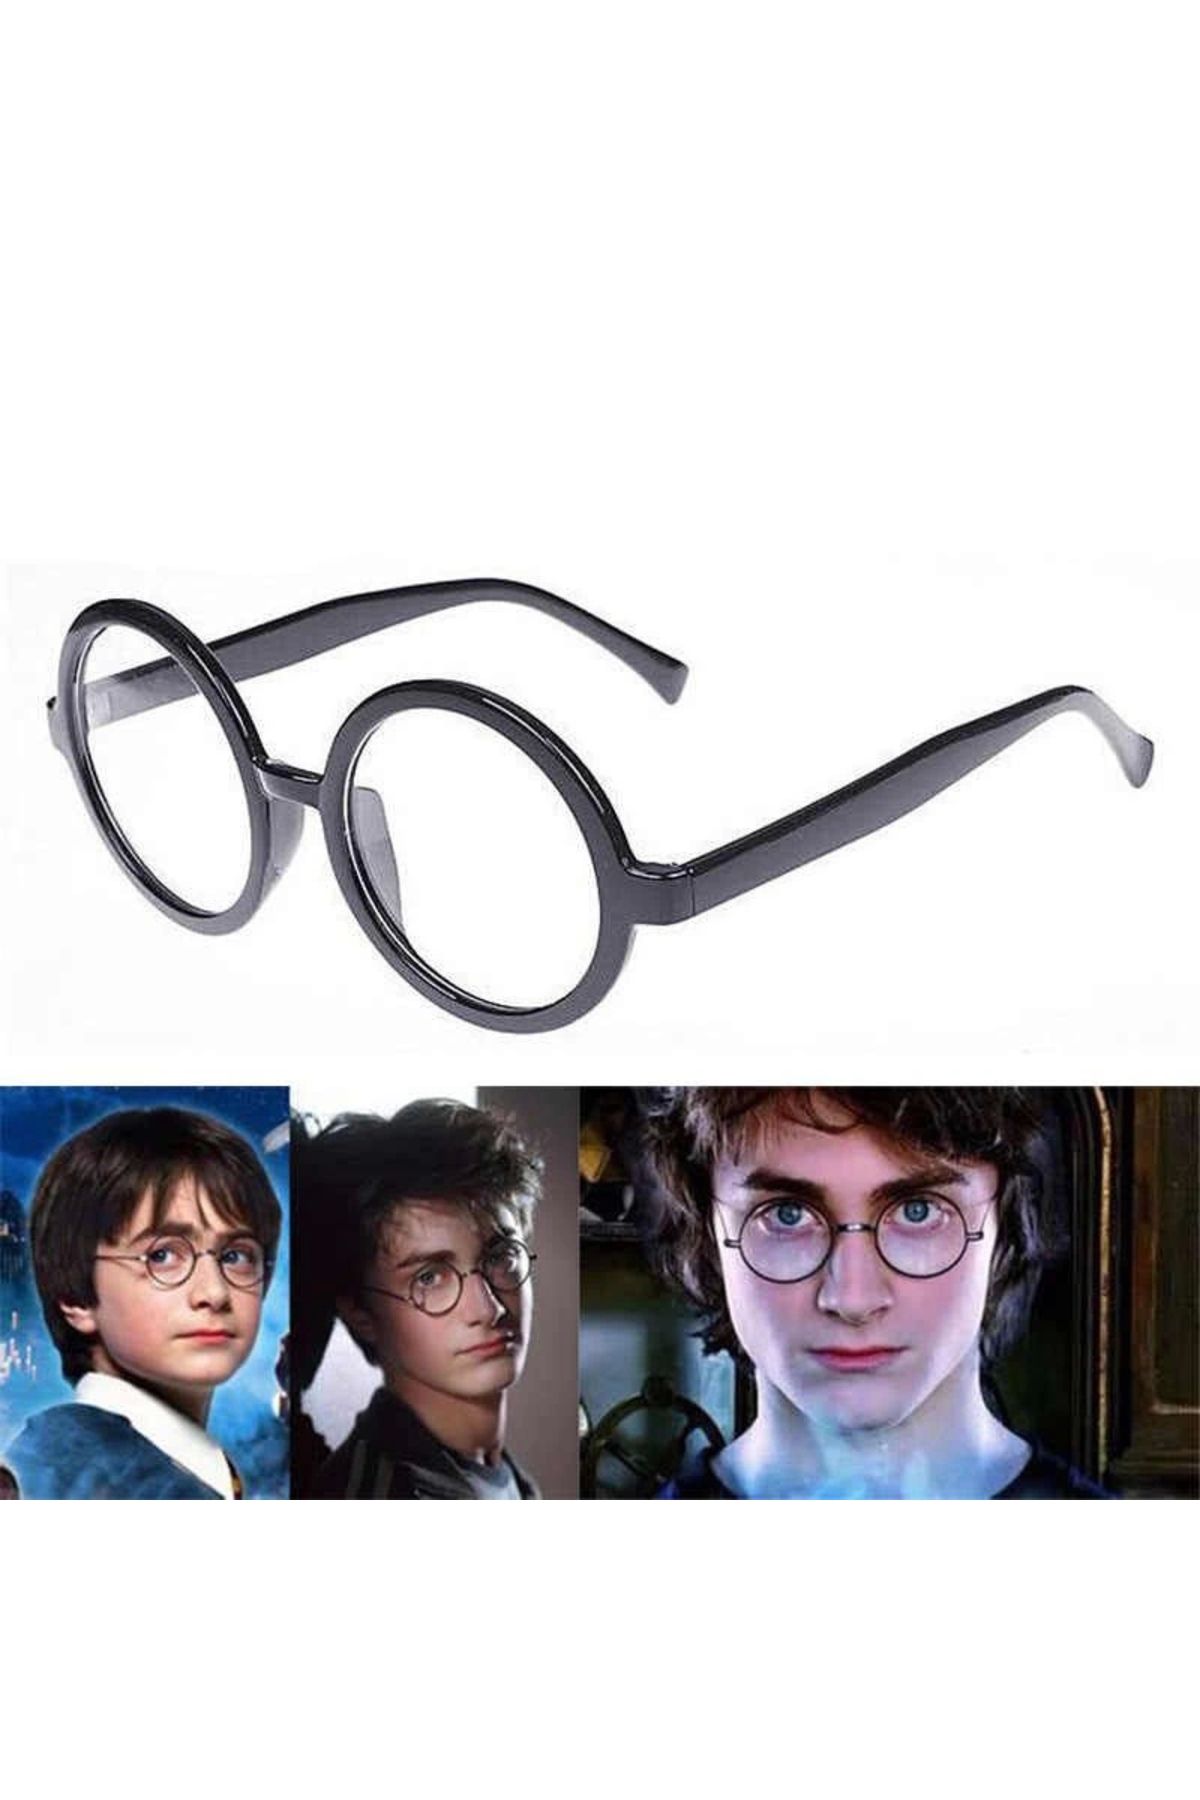 Go İthalat Siyah Çerçeveli Harry Potter Gözlüğü (4462)